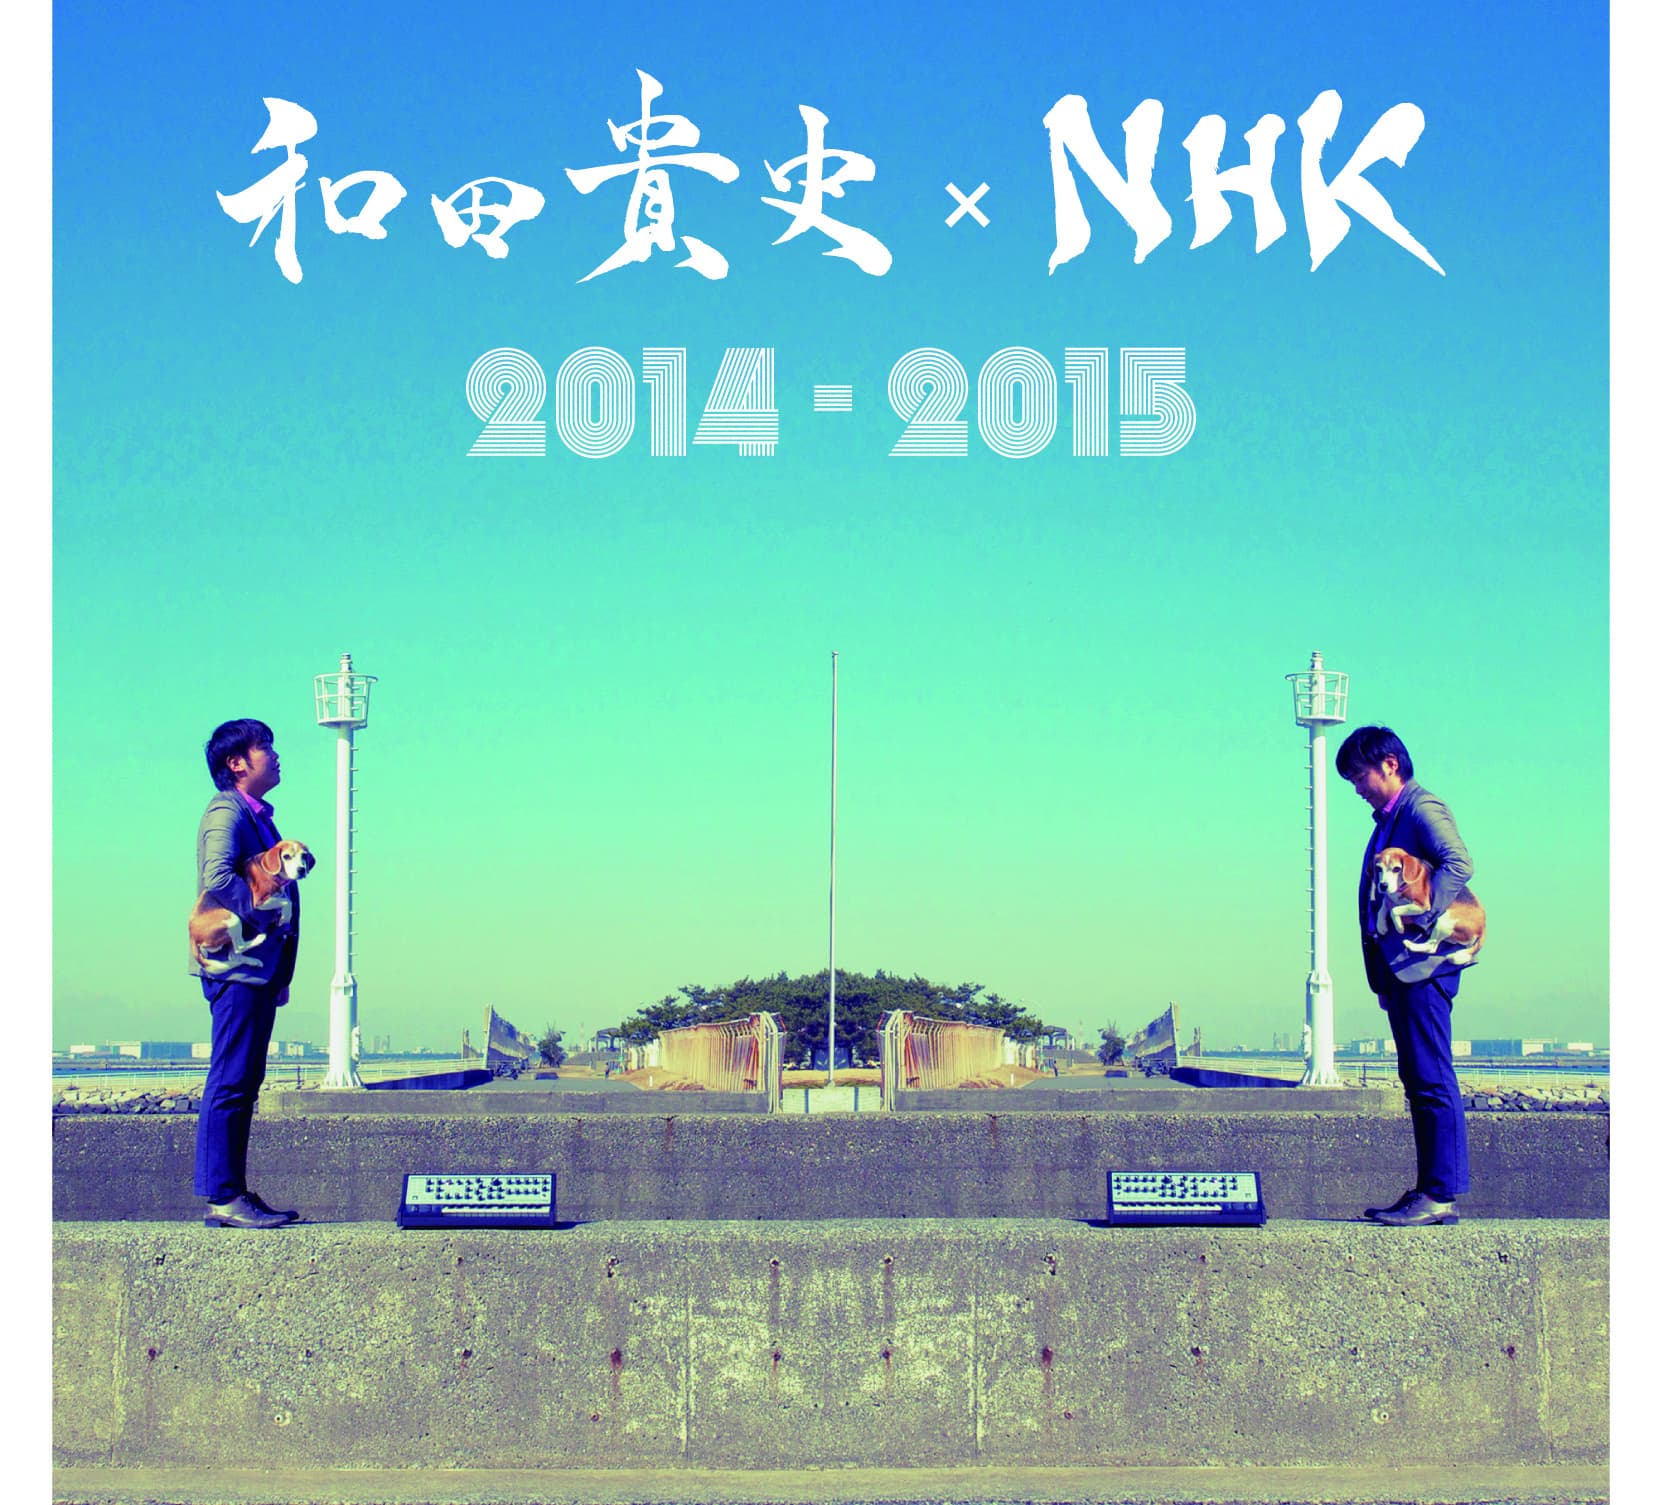 和田貴史×NHK2014-2015